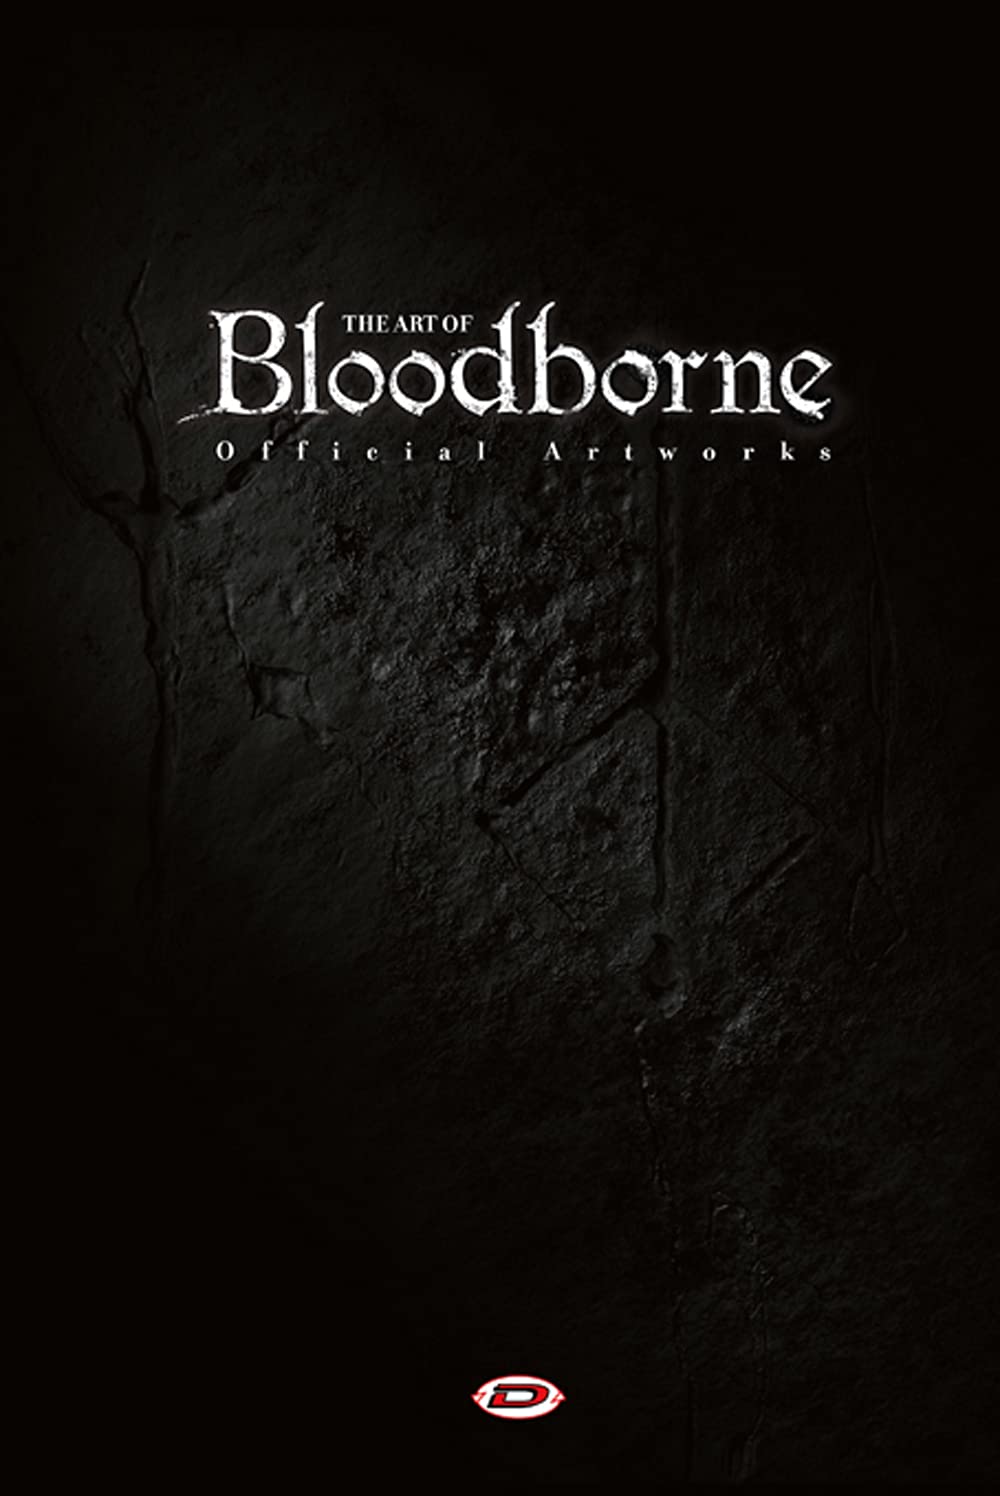 Libri Art Of Bloodborne (The) - Official Artworks NUOVO SIGILLATO, EDIZIONE DEL 17/11/2021 SUBITO DISPONIBILE